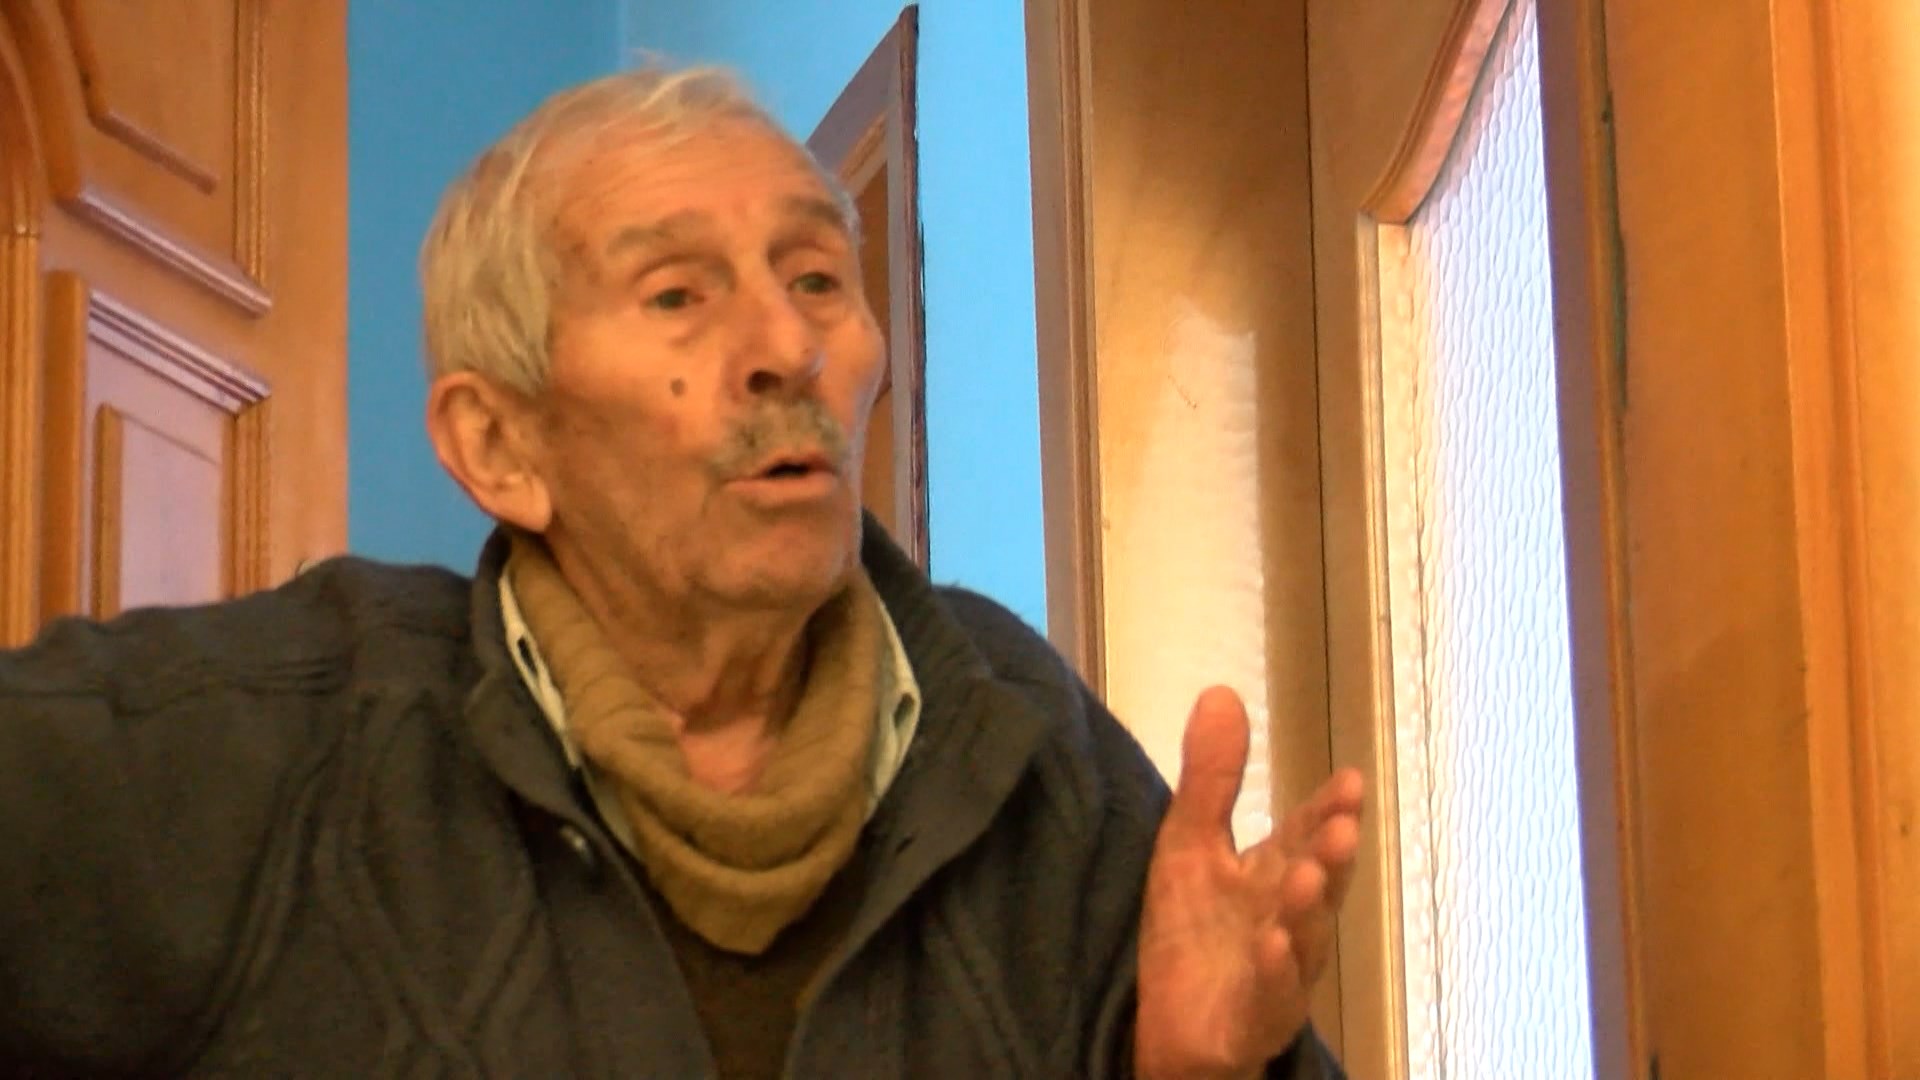 Kiracısının kapısını baltayla kıran 93 yaşındaki ev sahibi: "Pazartesi günü 7-8 camını kıracağım"